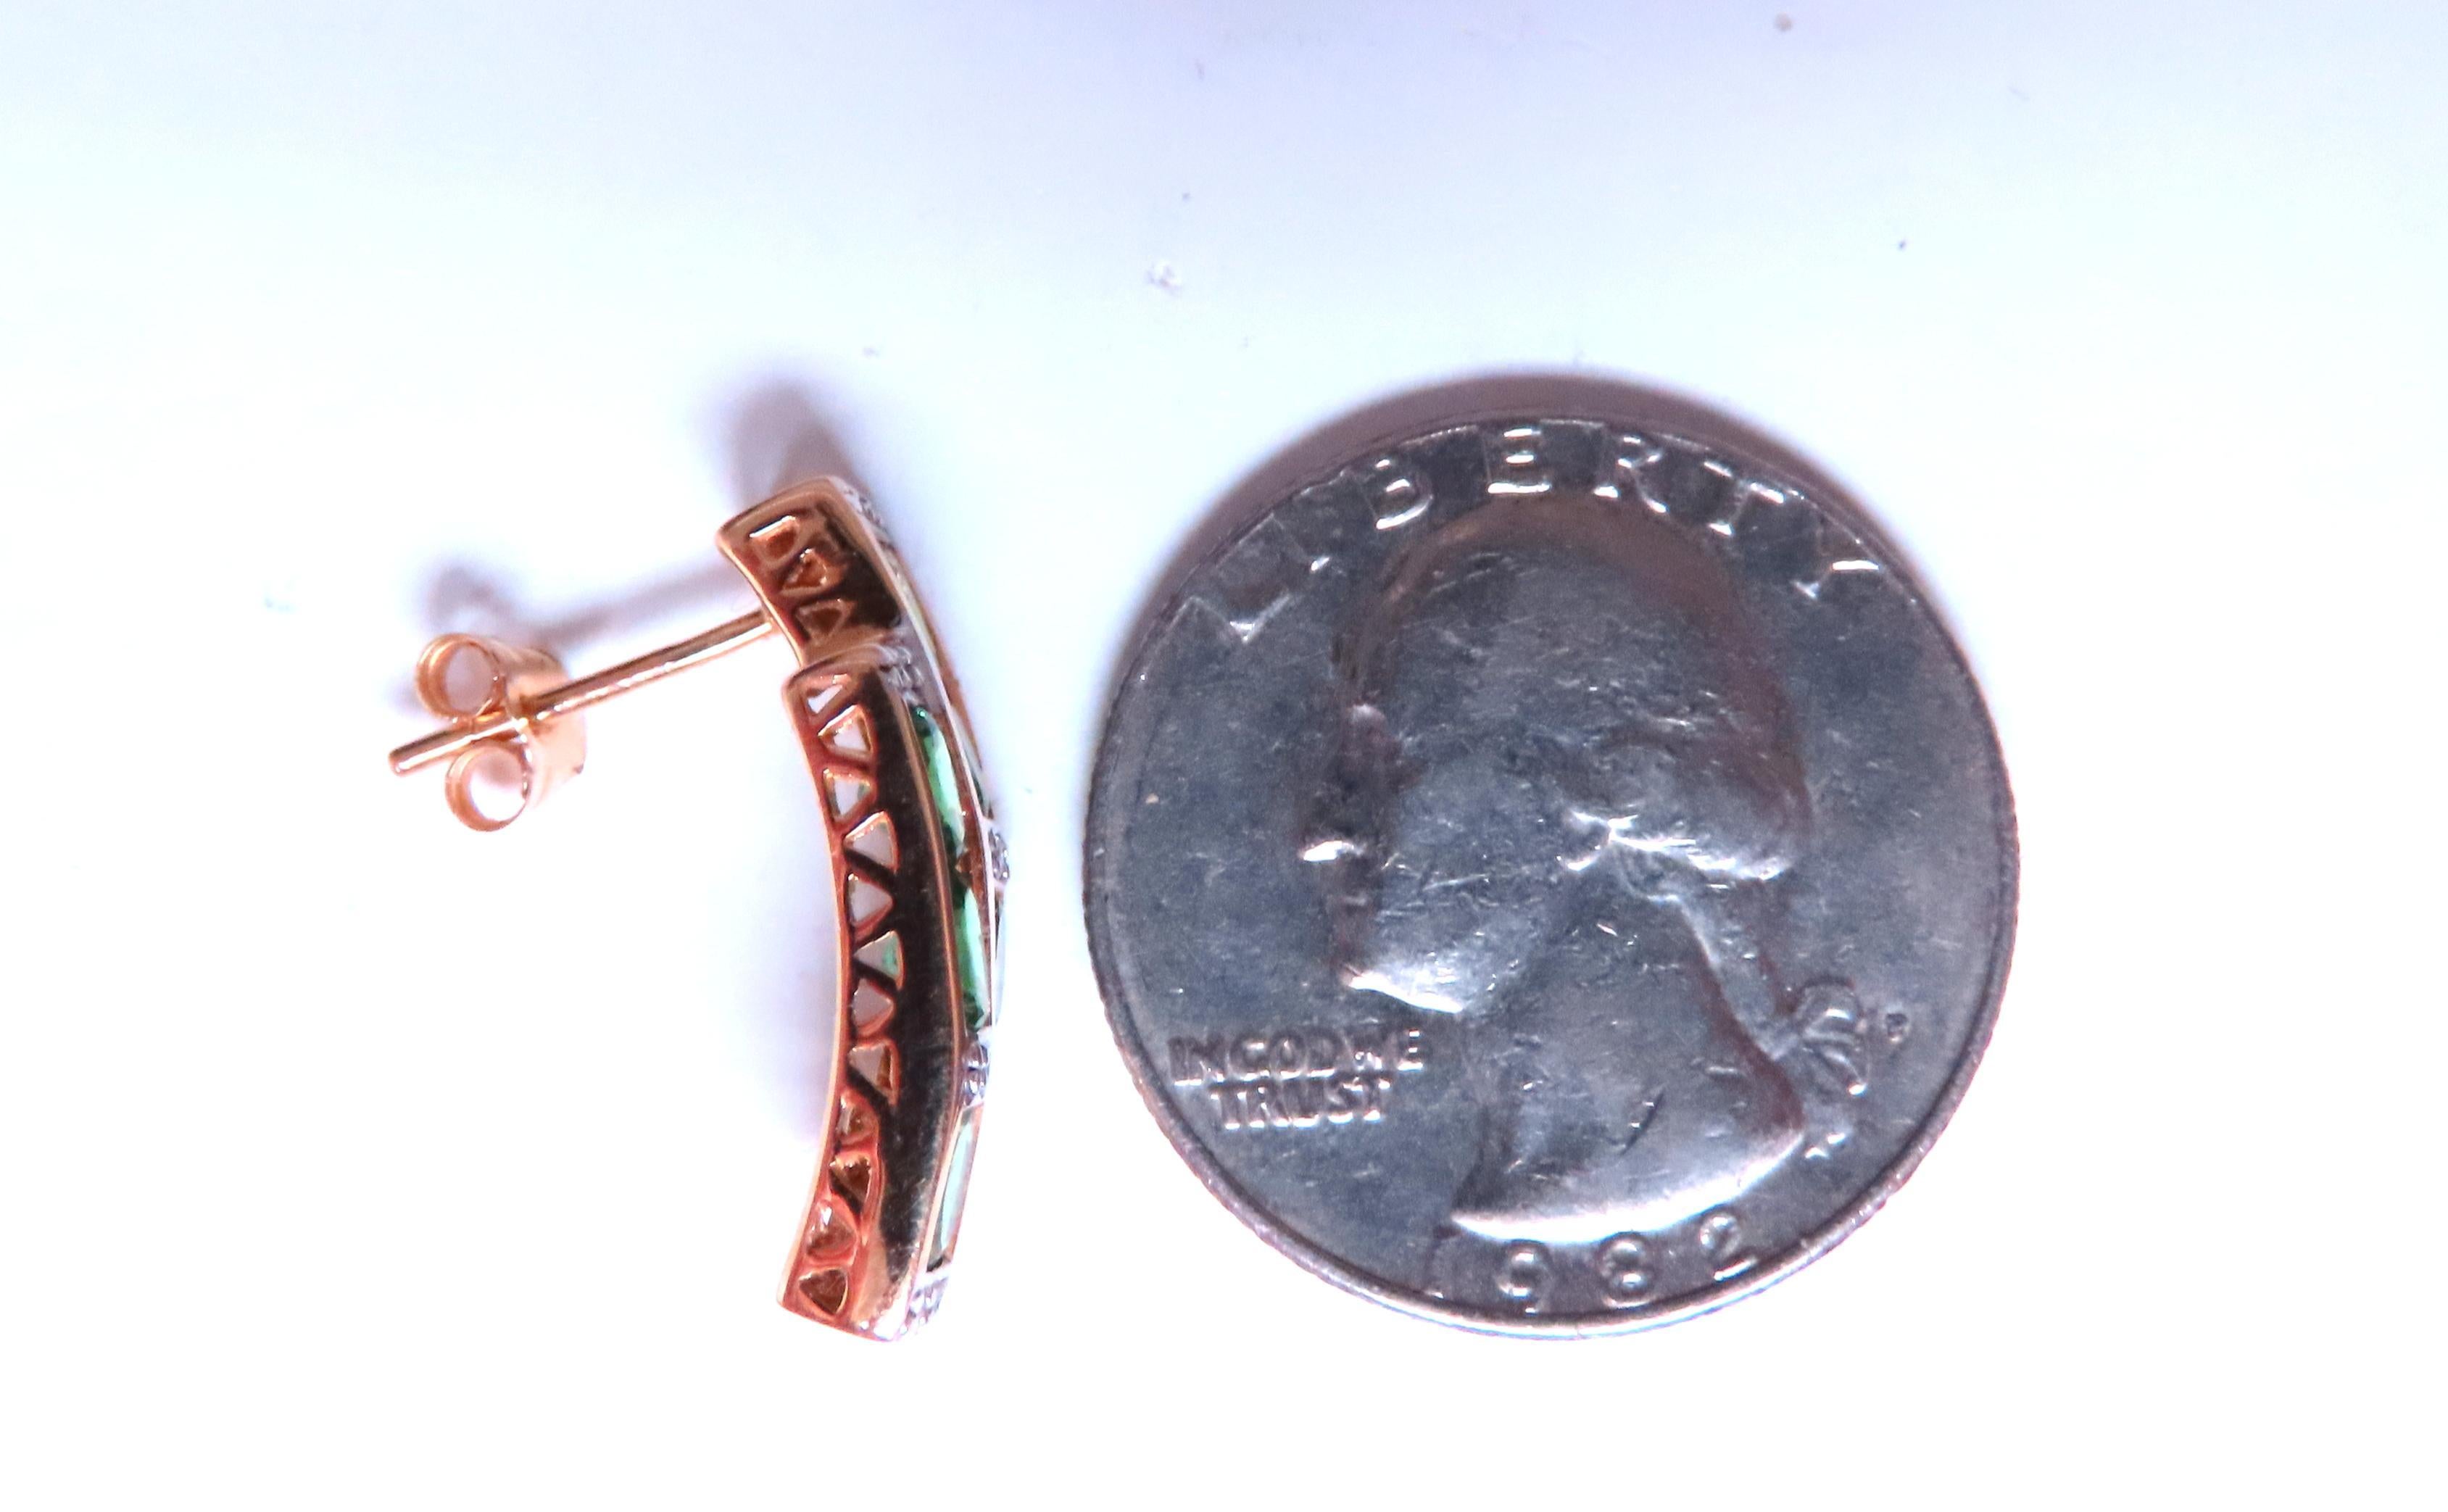 Boucles d'oreilles en Tsavorite ovale naturel de 2,50ct.
Diamants de 0,10 ct.
I-color Si-1 clarity.
Or 14kt.
5.2 grammes

21 x 8mm